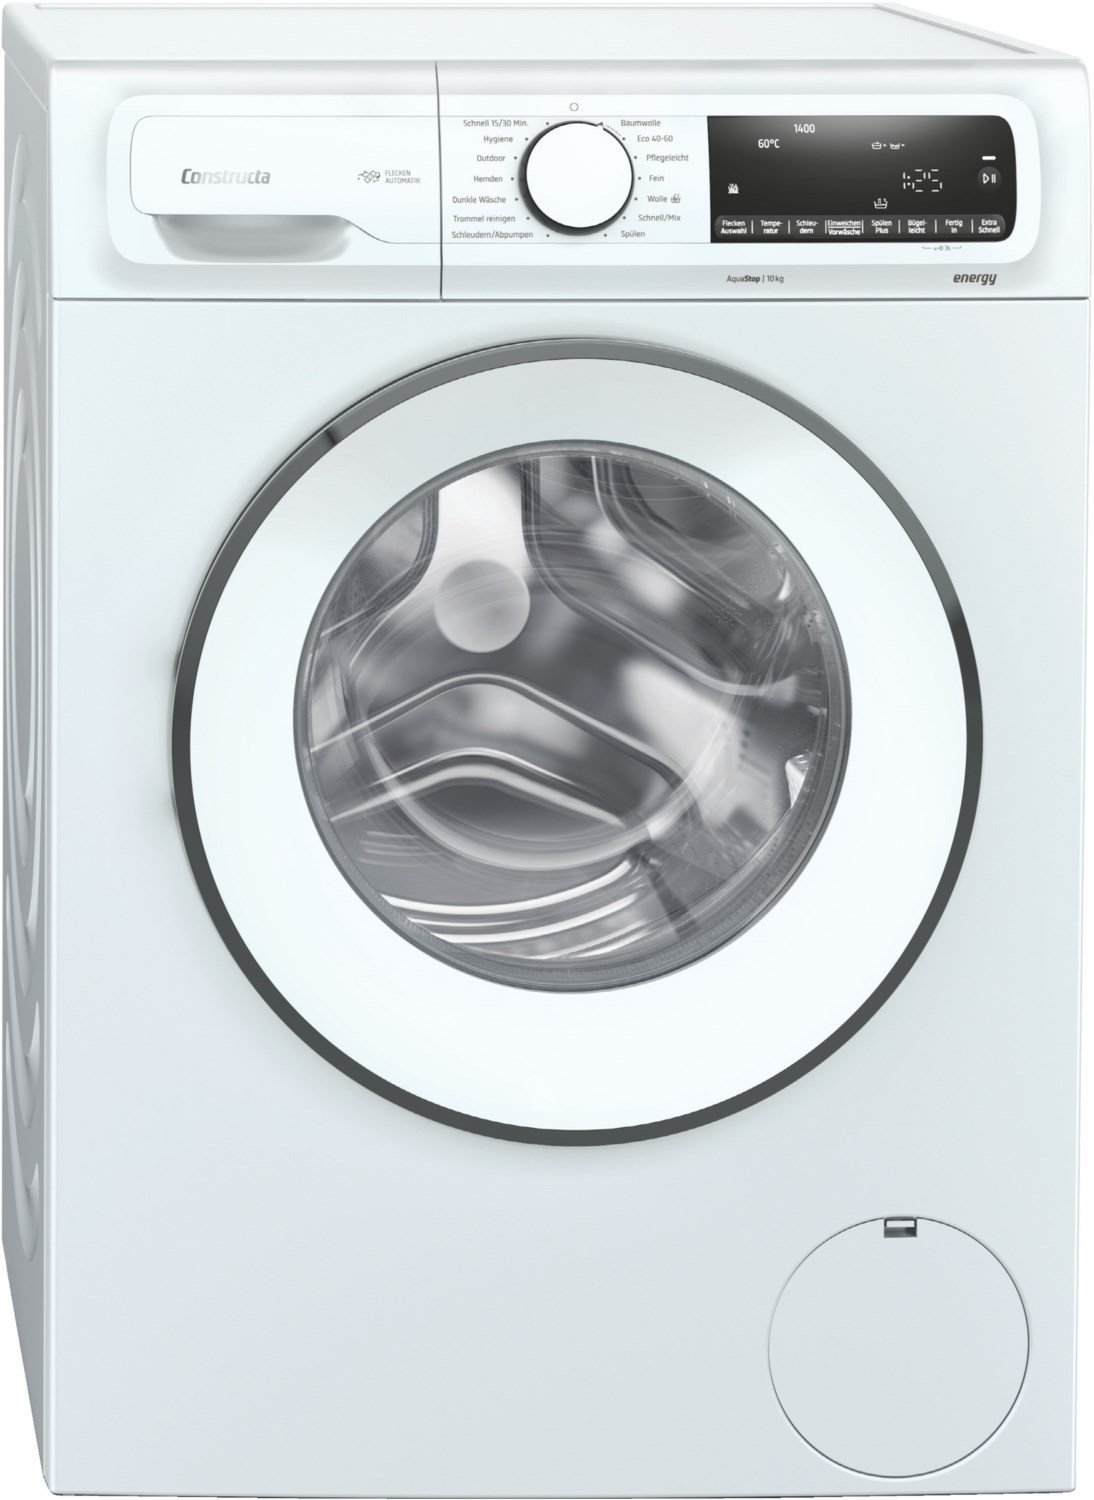 CWF14G110 Stand-Waschmaschine-Frontlader weiß / C